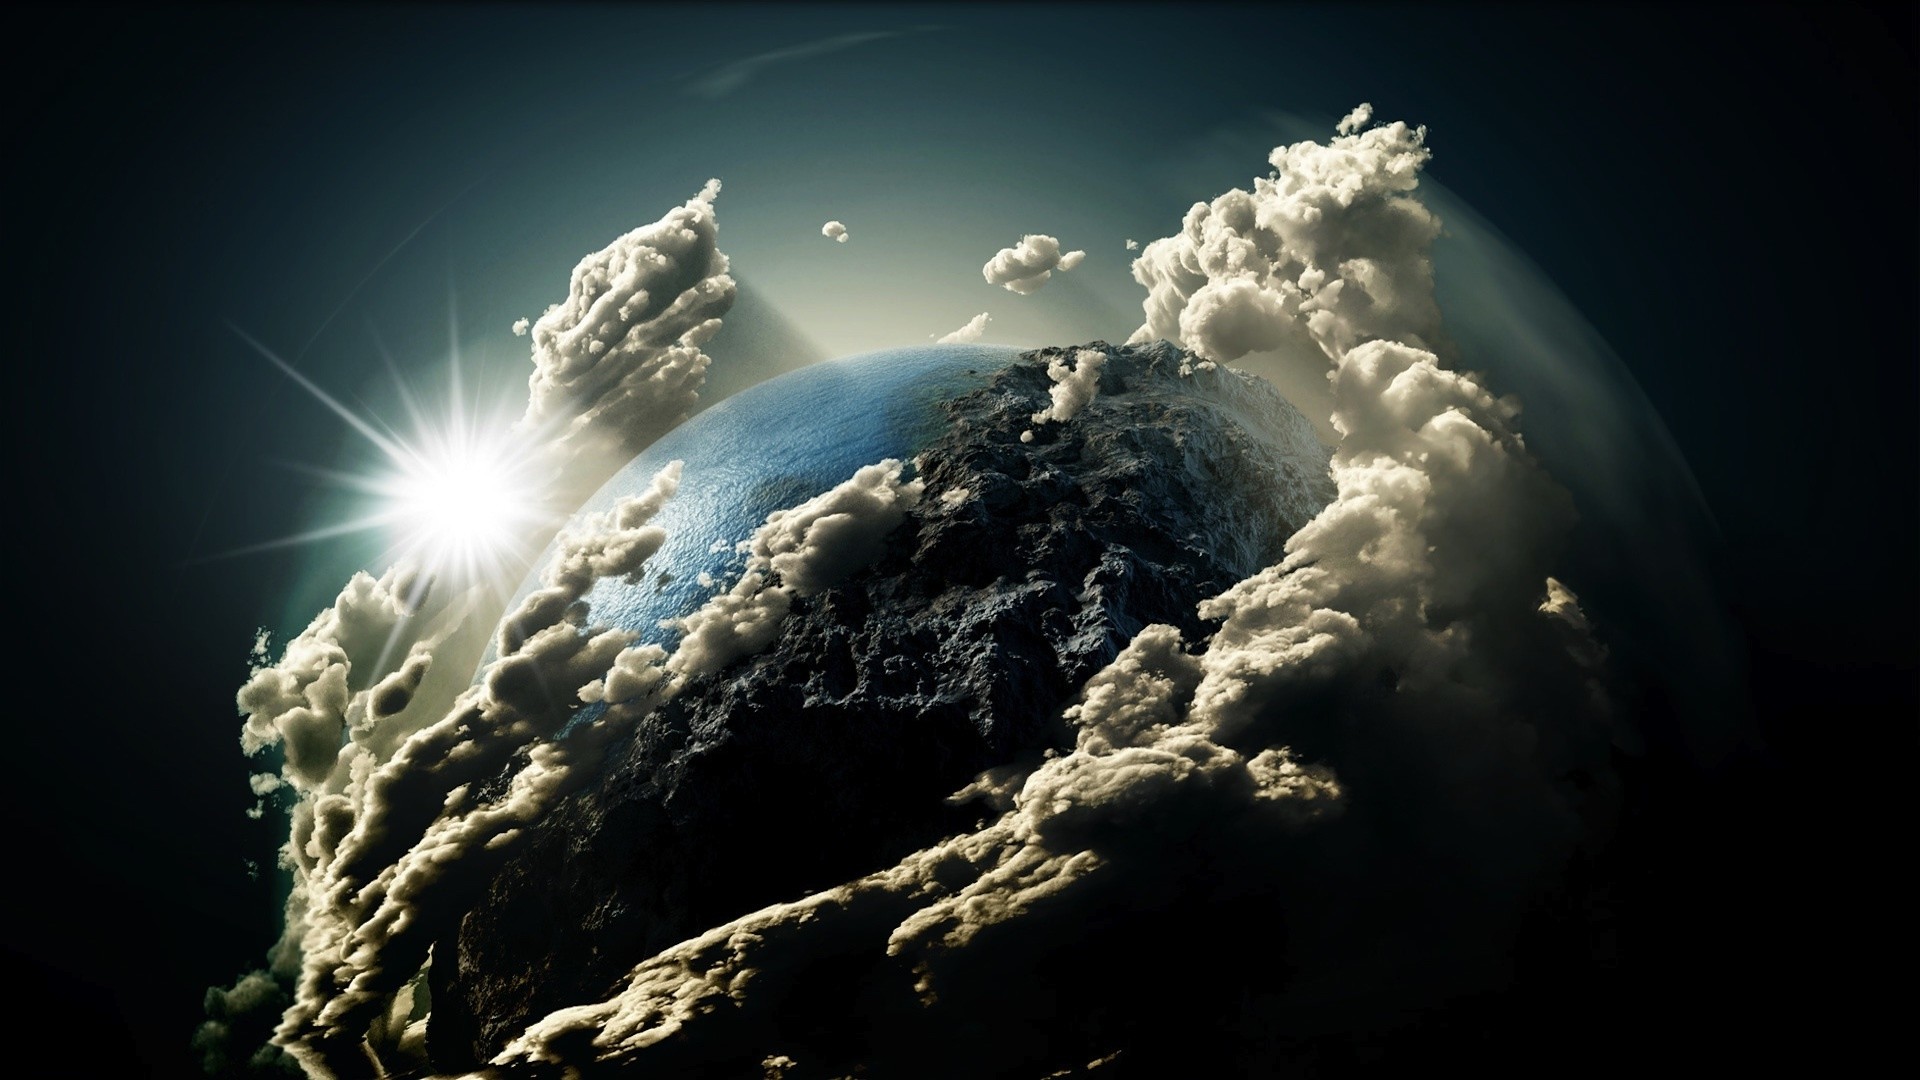 Mây trên trái đất: Cảm nhận đẹp như tranh vẽ của những tấm ảnh về mây trên trái đất với các hình ảnh tuyệt đẹp, kỳ thú và đầy huyền bí. Điều này sẽ giúp bạn đưa mình đến những khoảnh khắc thư giãn và tâm trạng tuyệt vời.